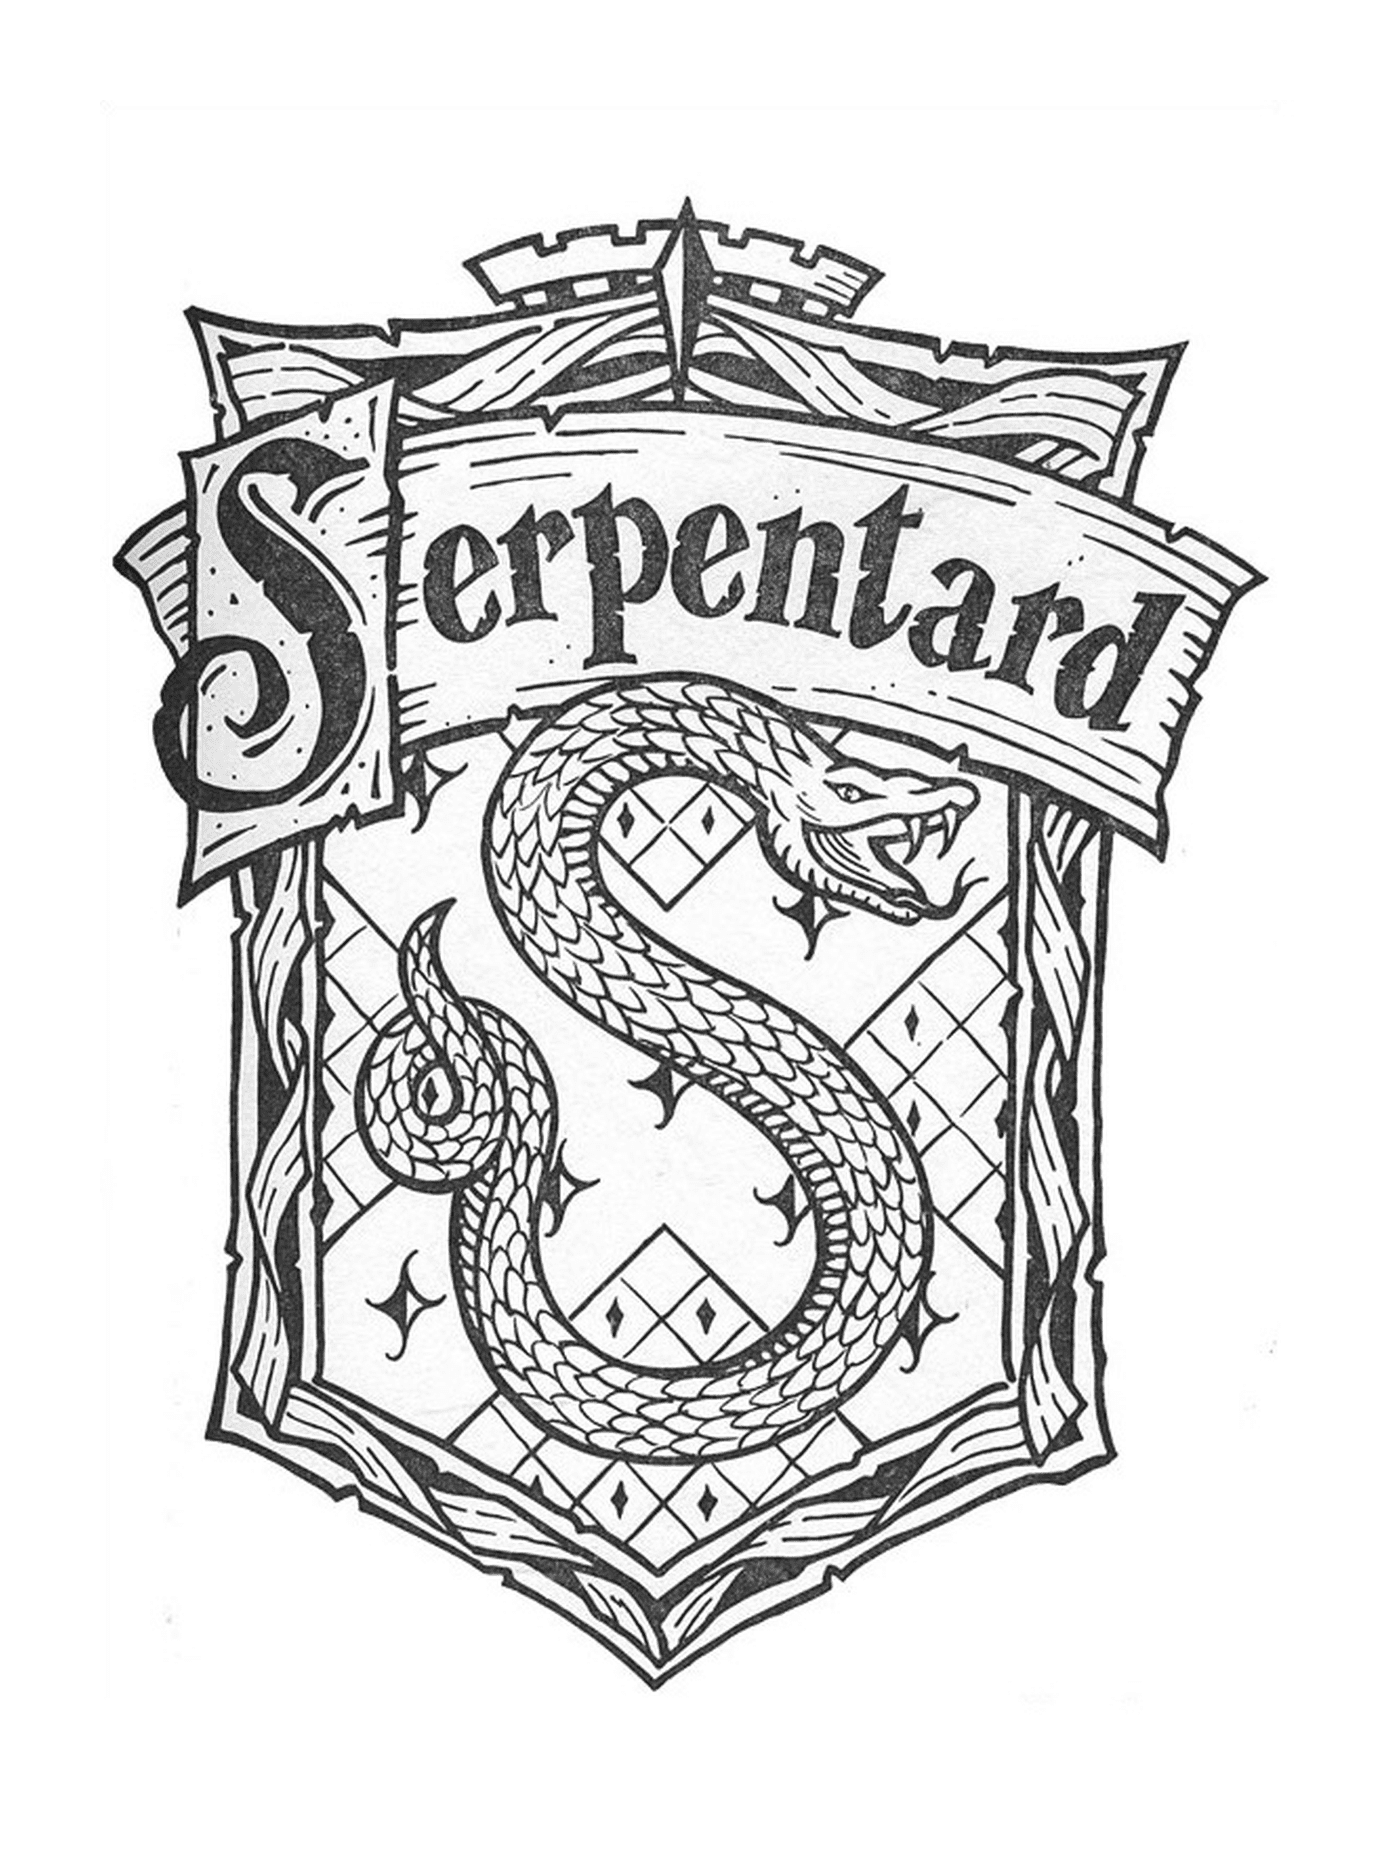  El Blazón de Serpentard, Harry Potter 